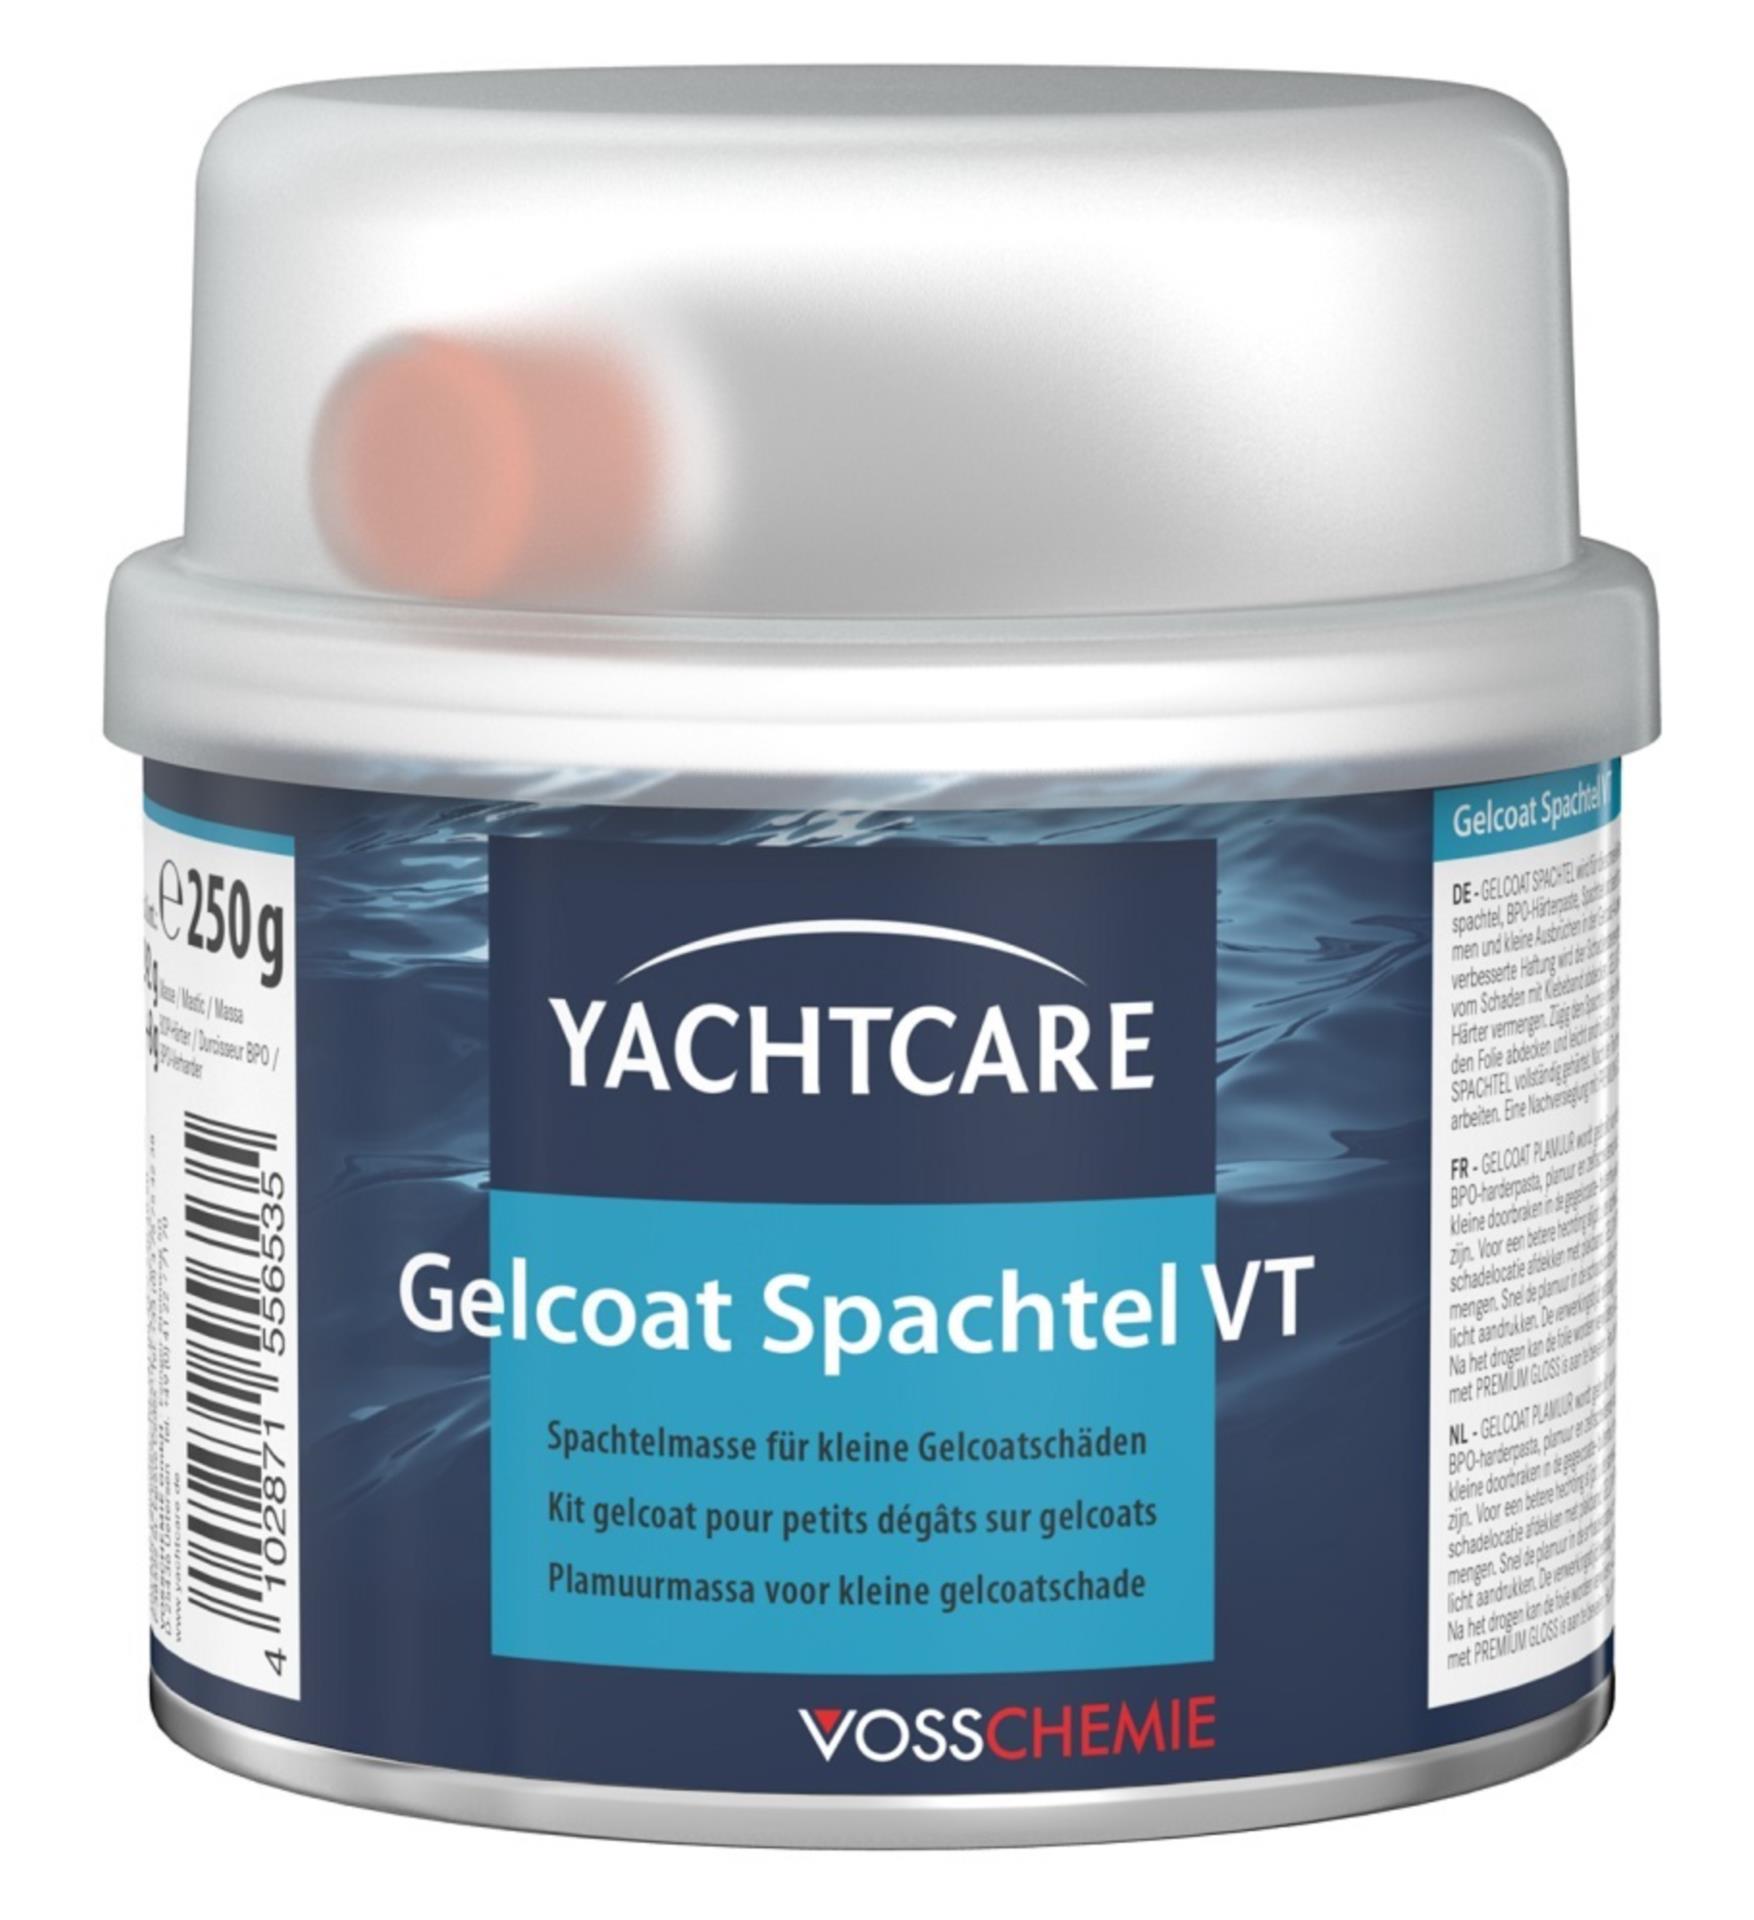 yachtcare gelcoat vt repair kit